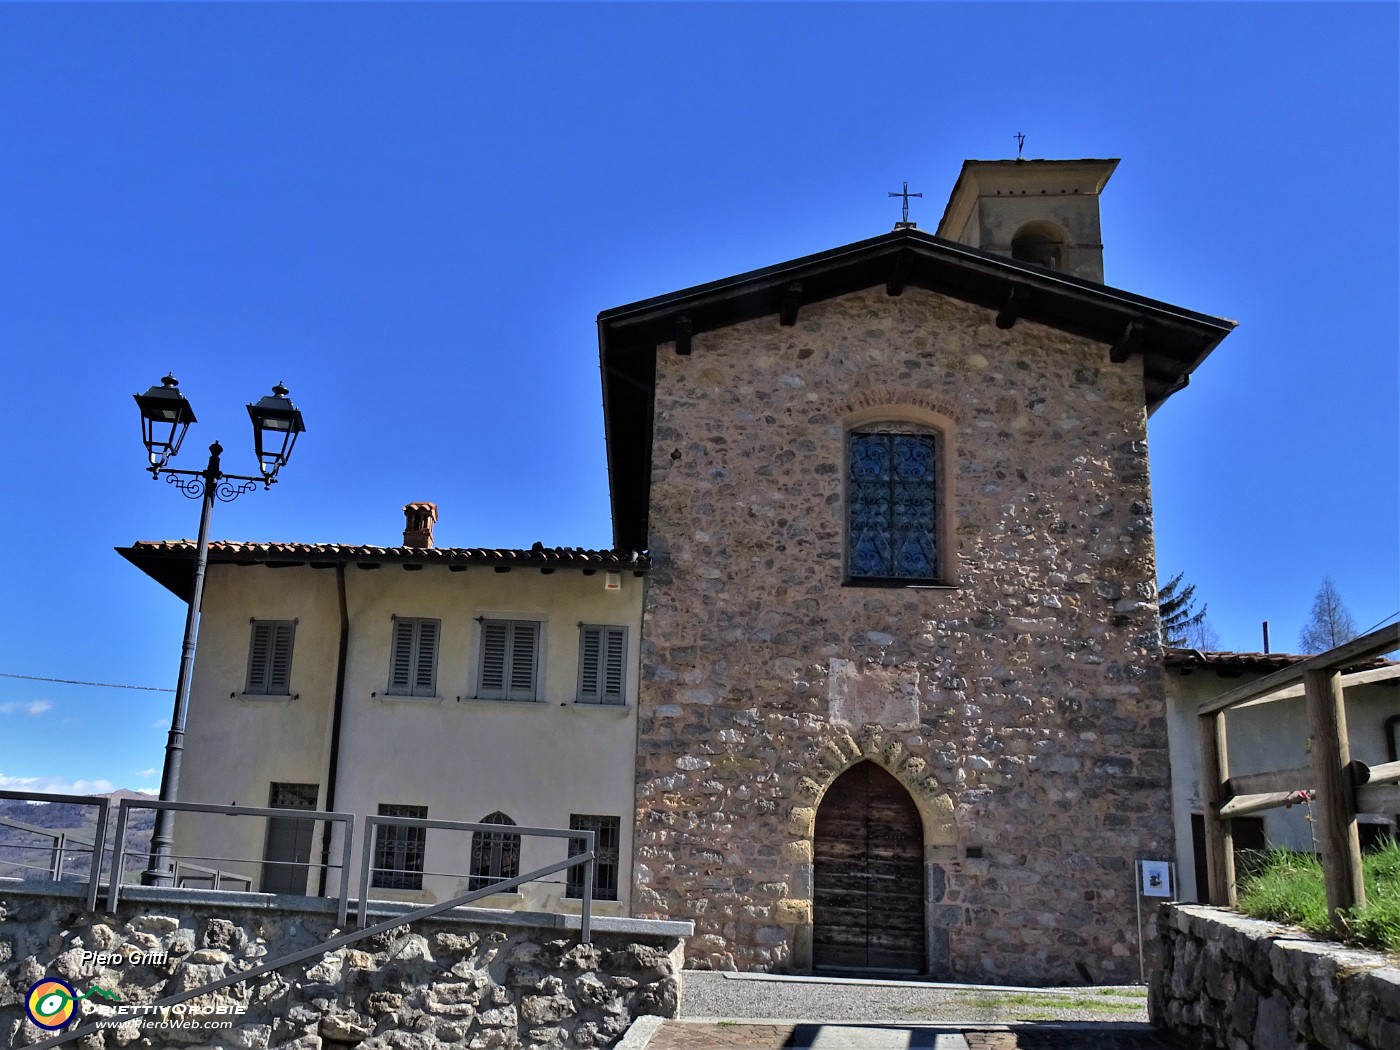 11 Facciata della chiesetta con bel portale medievale a sesto acuto.JPG